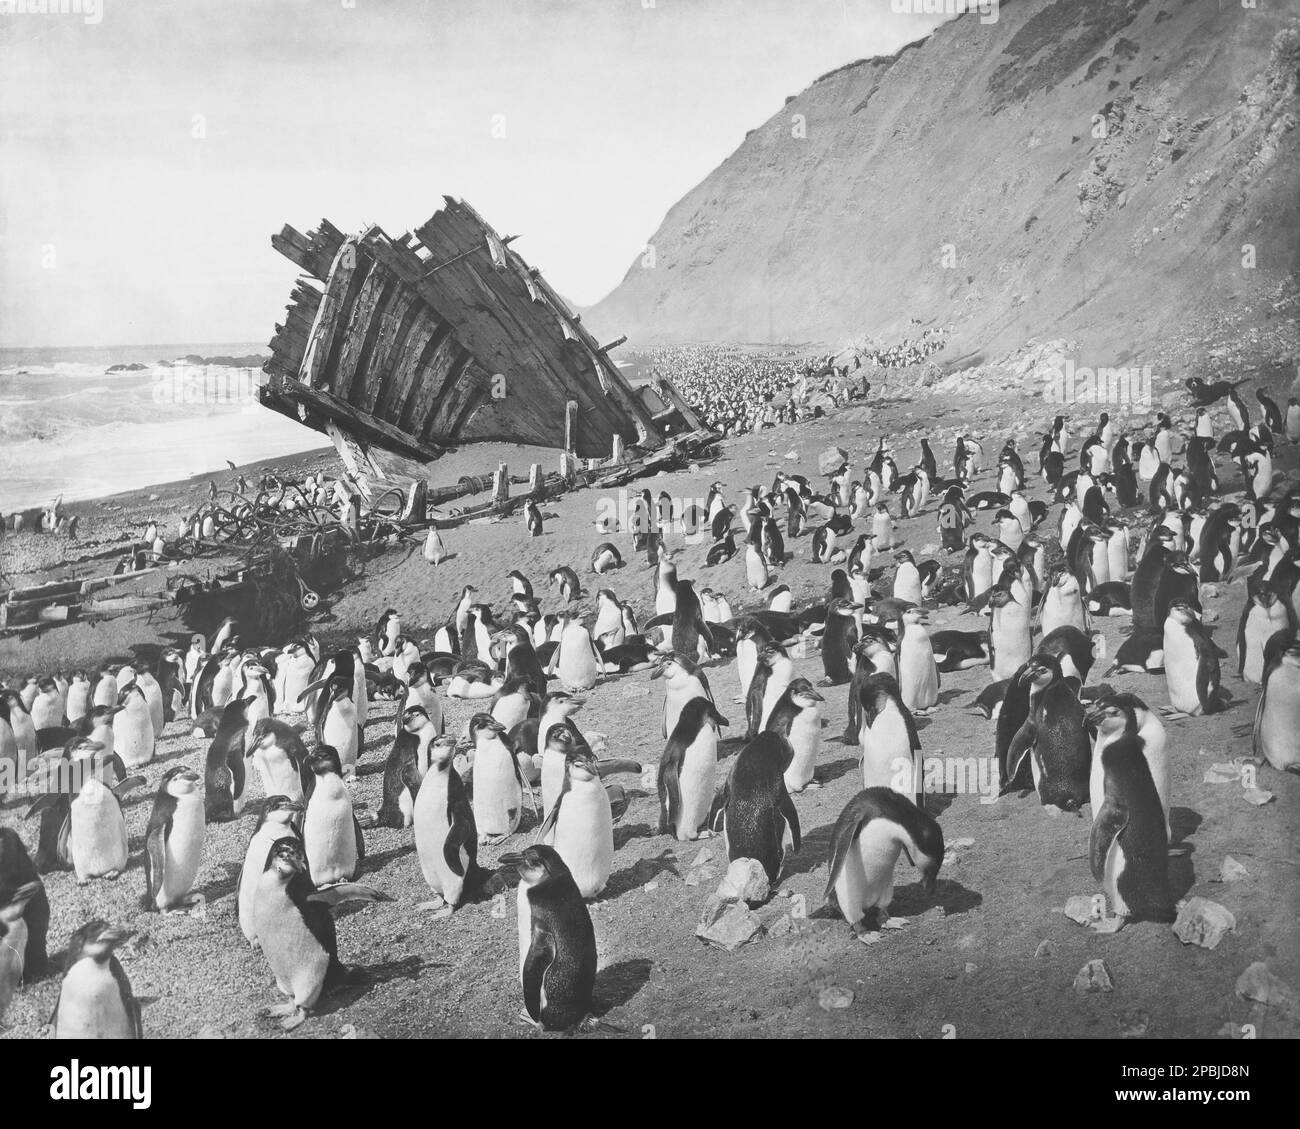 Les pingouins d'Adelie se rassemblent à l'épave de la goélette gratitude qui s'est échoué sur l'île Macquarie en 1898. Banque D'Images